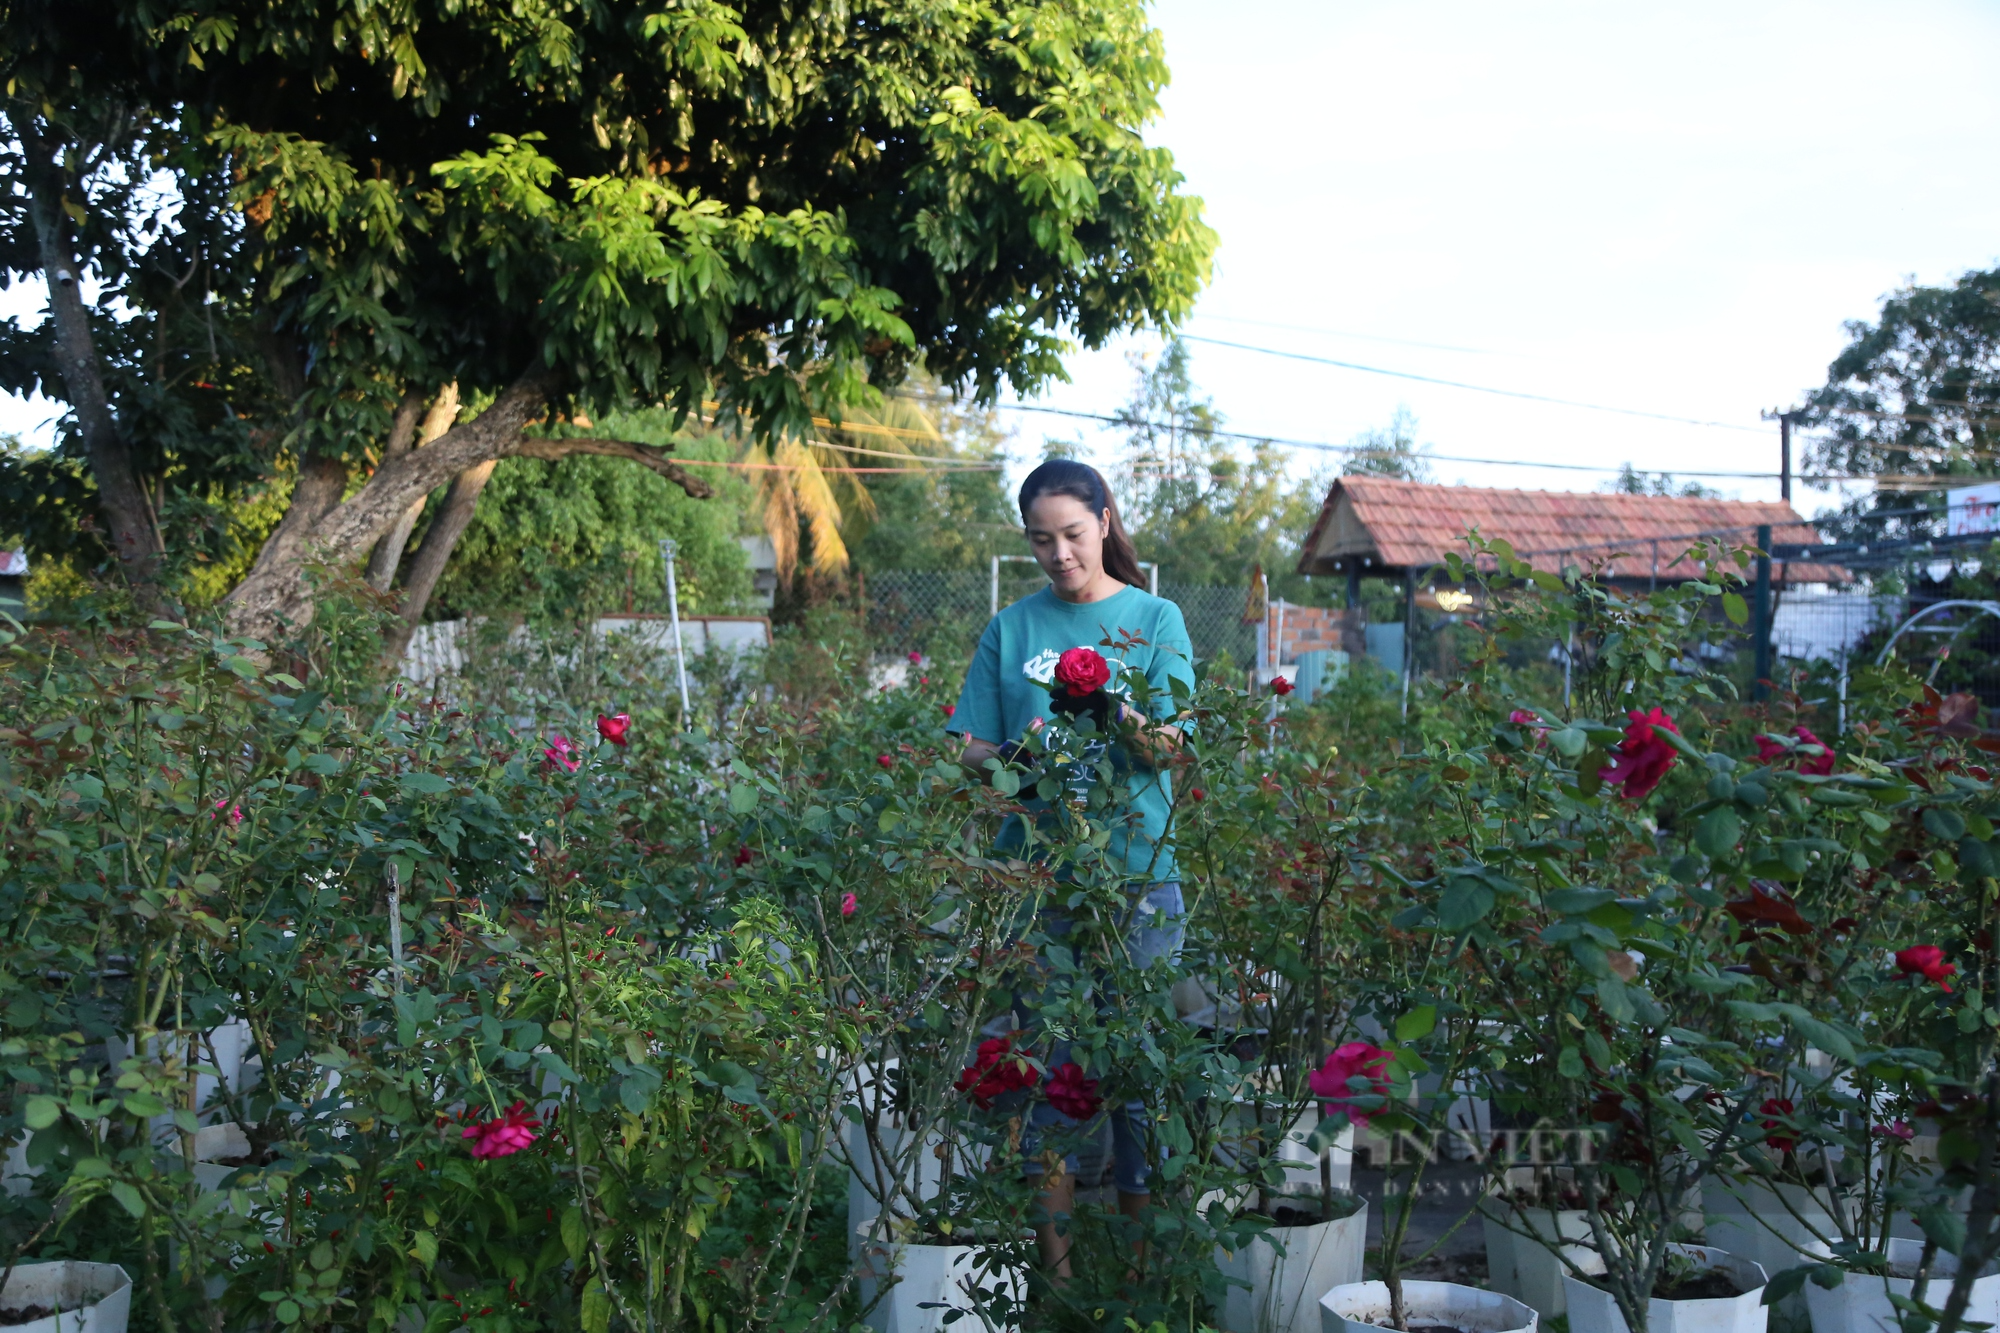 Cô gái 9X trồng hoa hồng ngoại trên phố núi, thu về cả trăm triệu đồng mỗi năm - Ảnh 1.